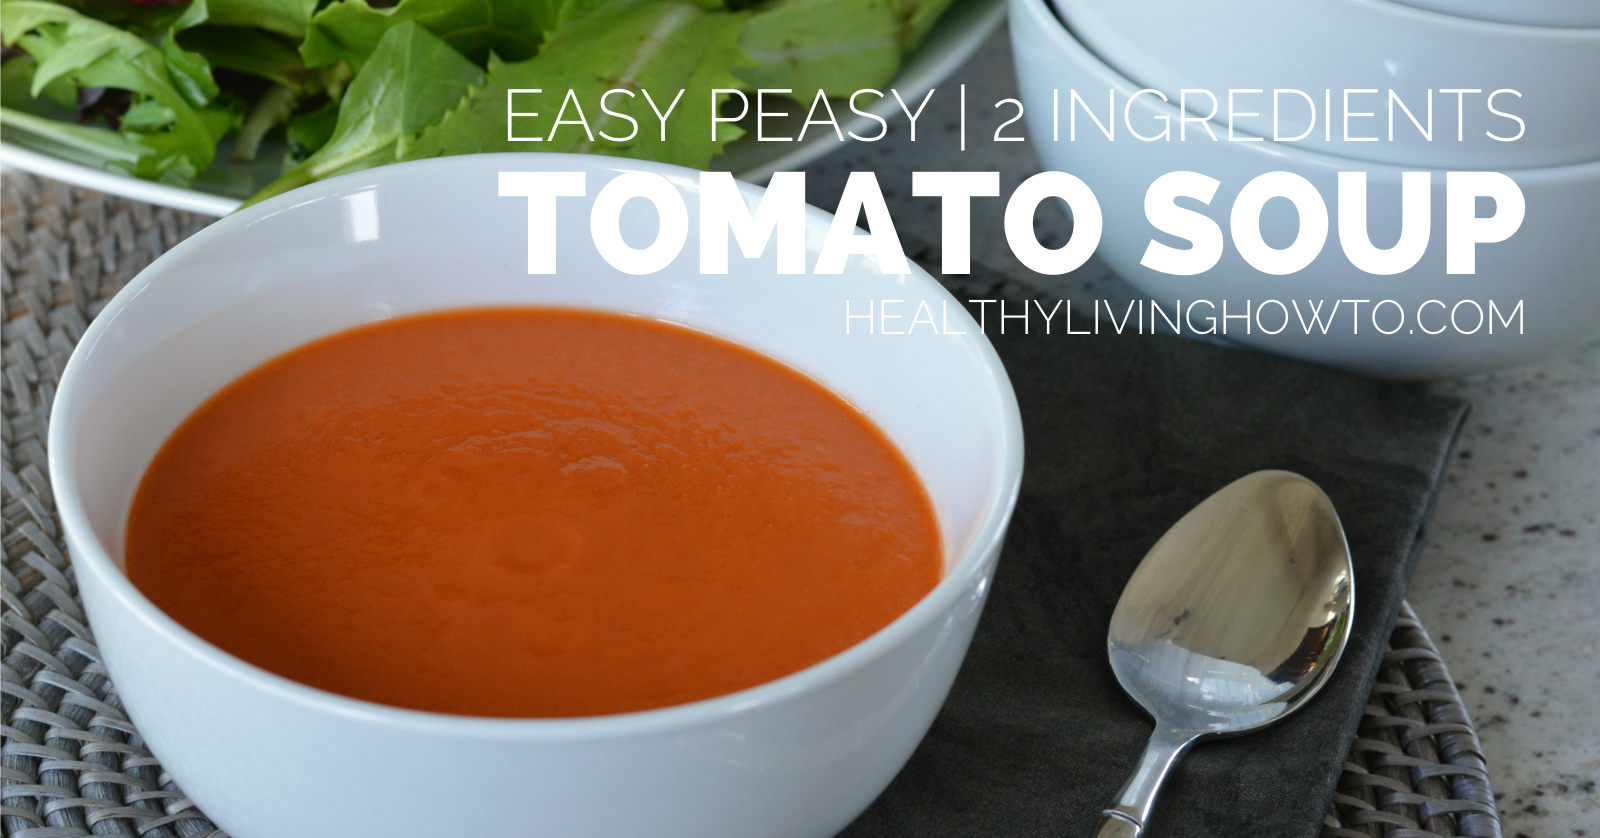 Easy Peasy 2 Ingredient Tomato Soup